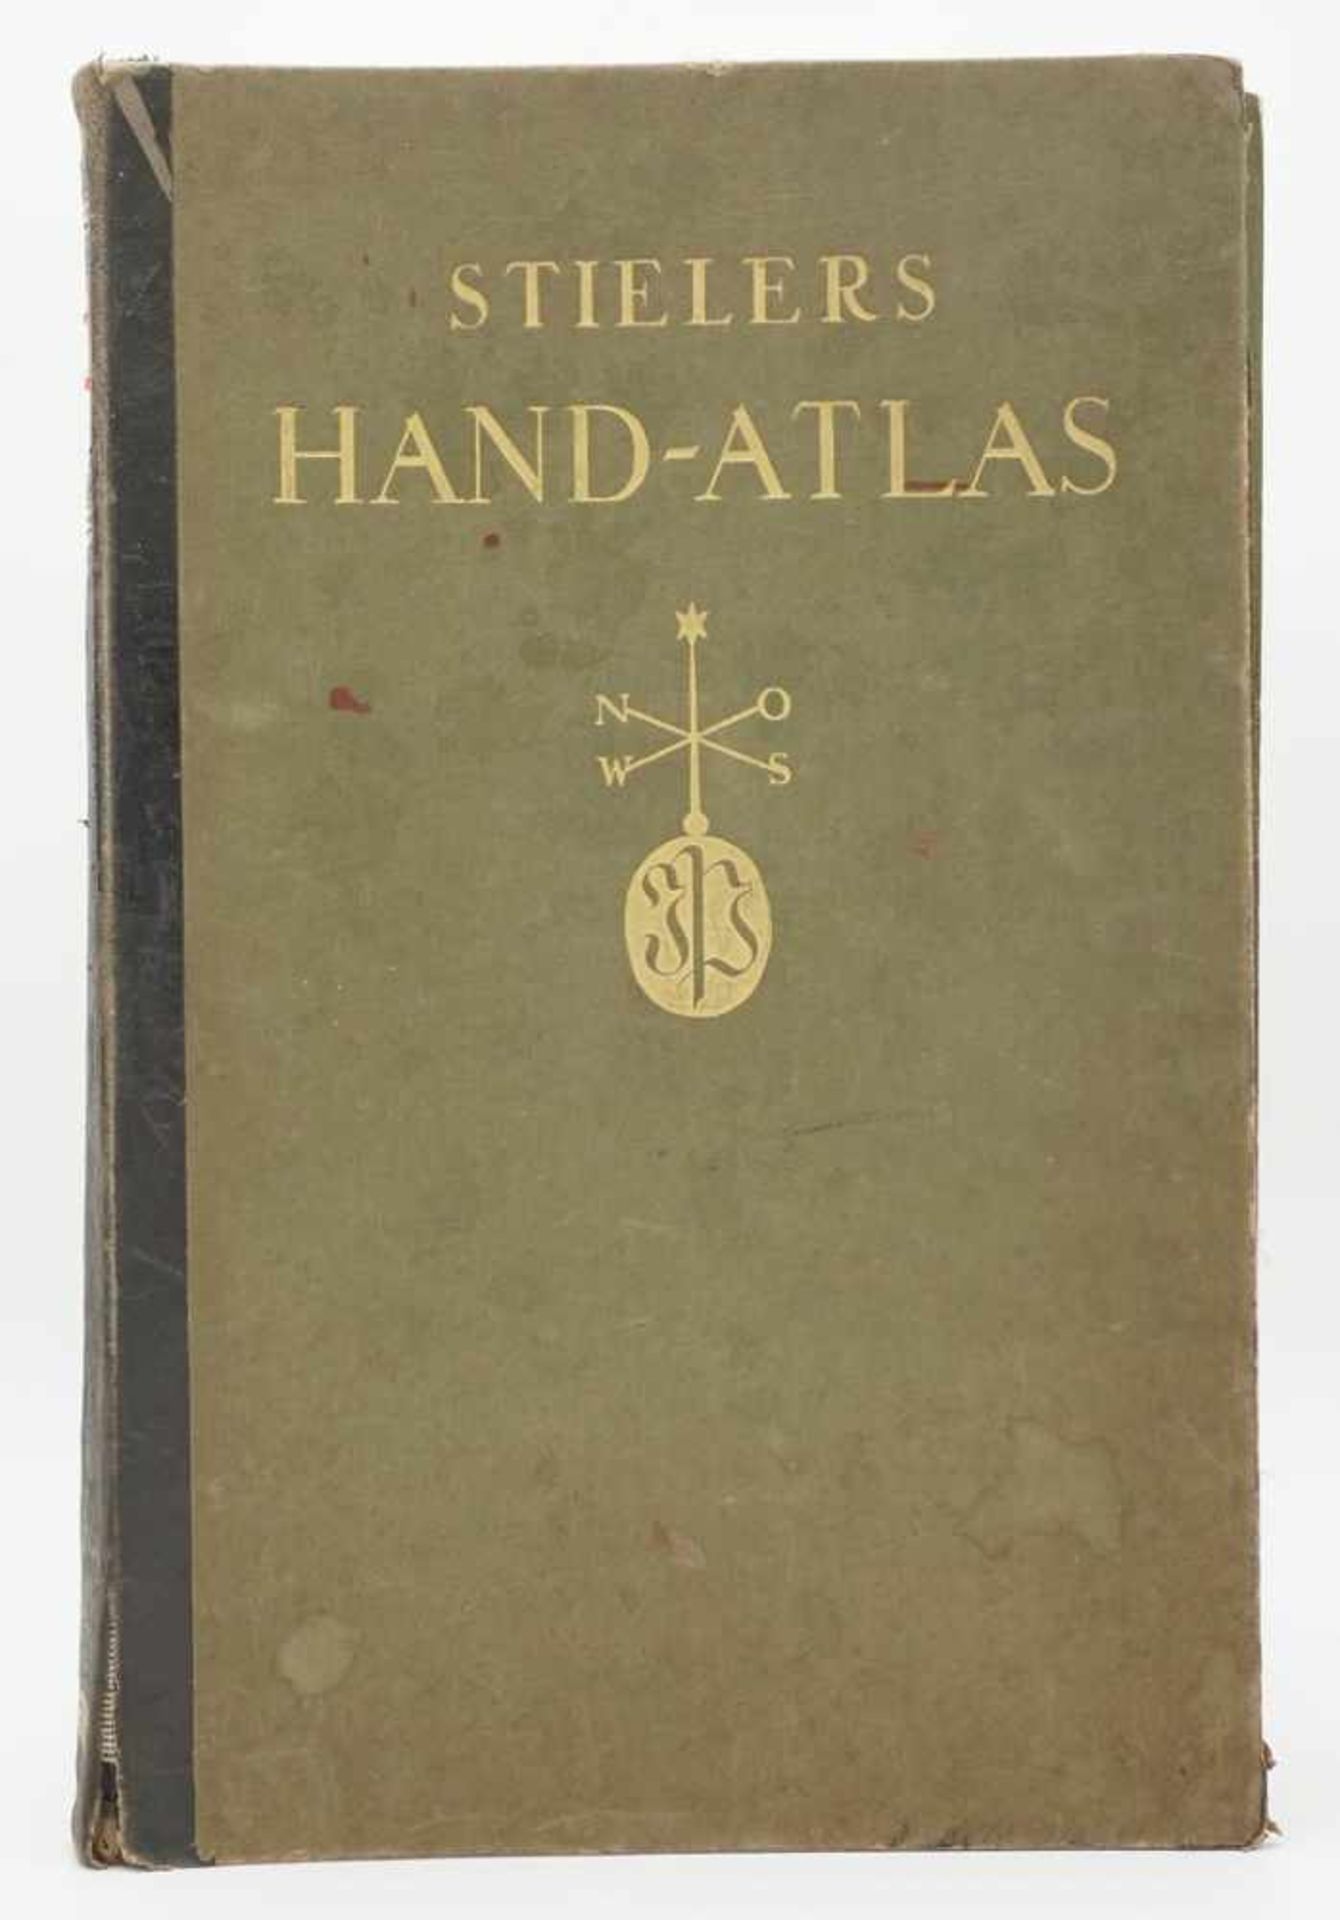 Adolf Stieler, "Stielers Hand-Atlas"